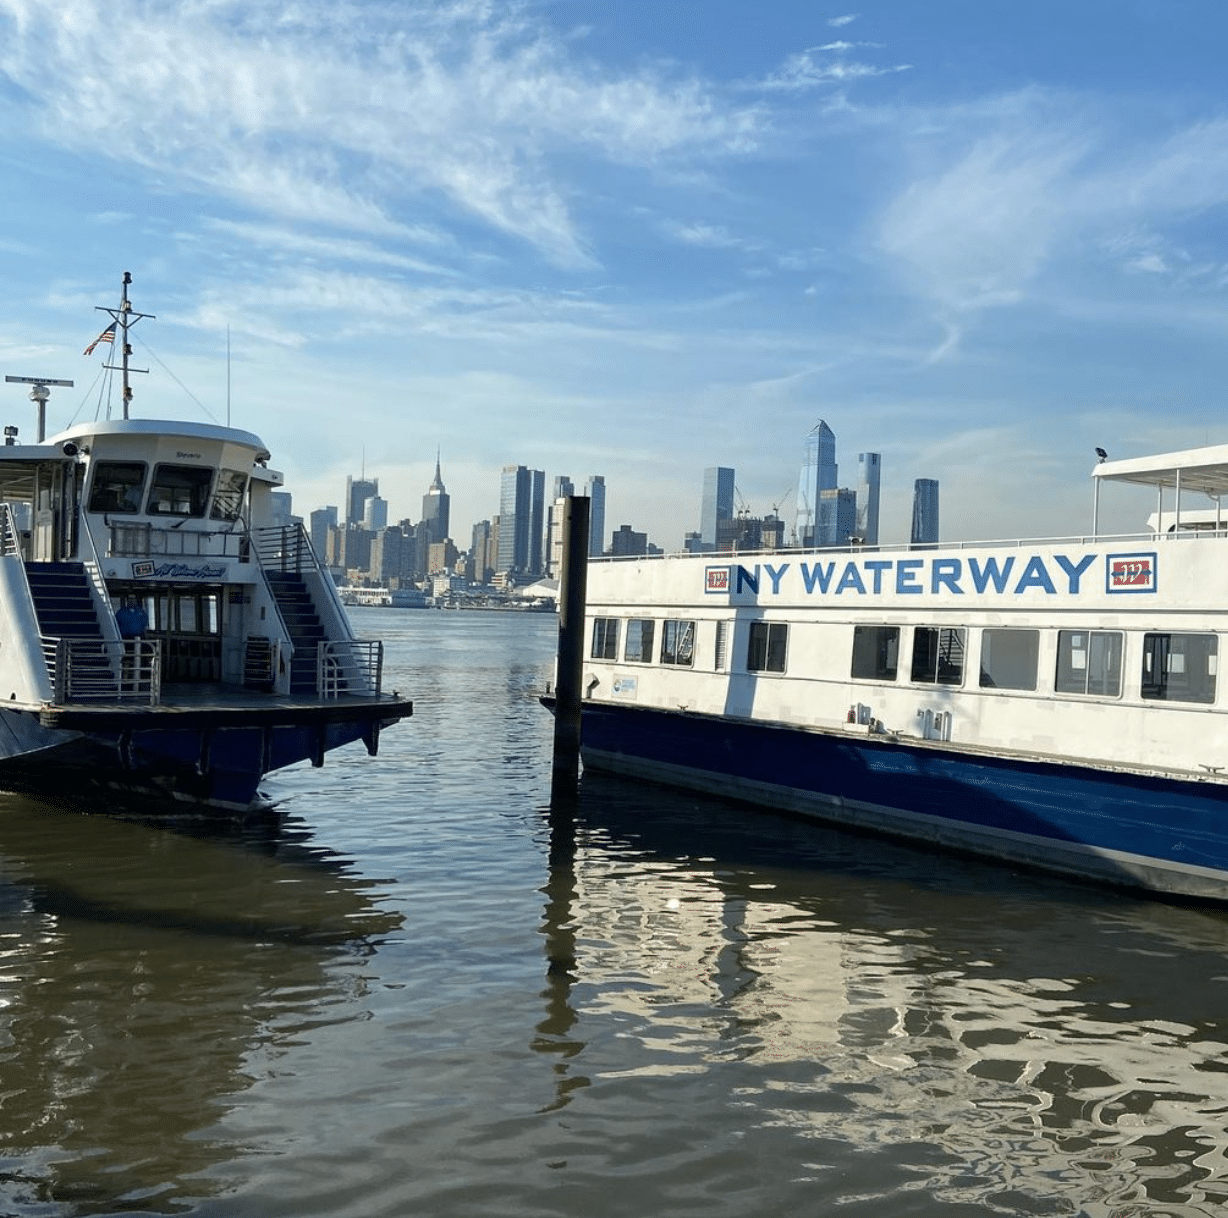 NY Waterway